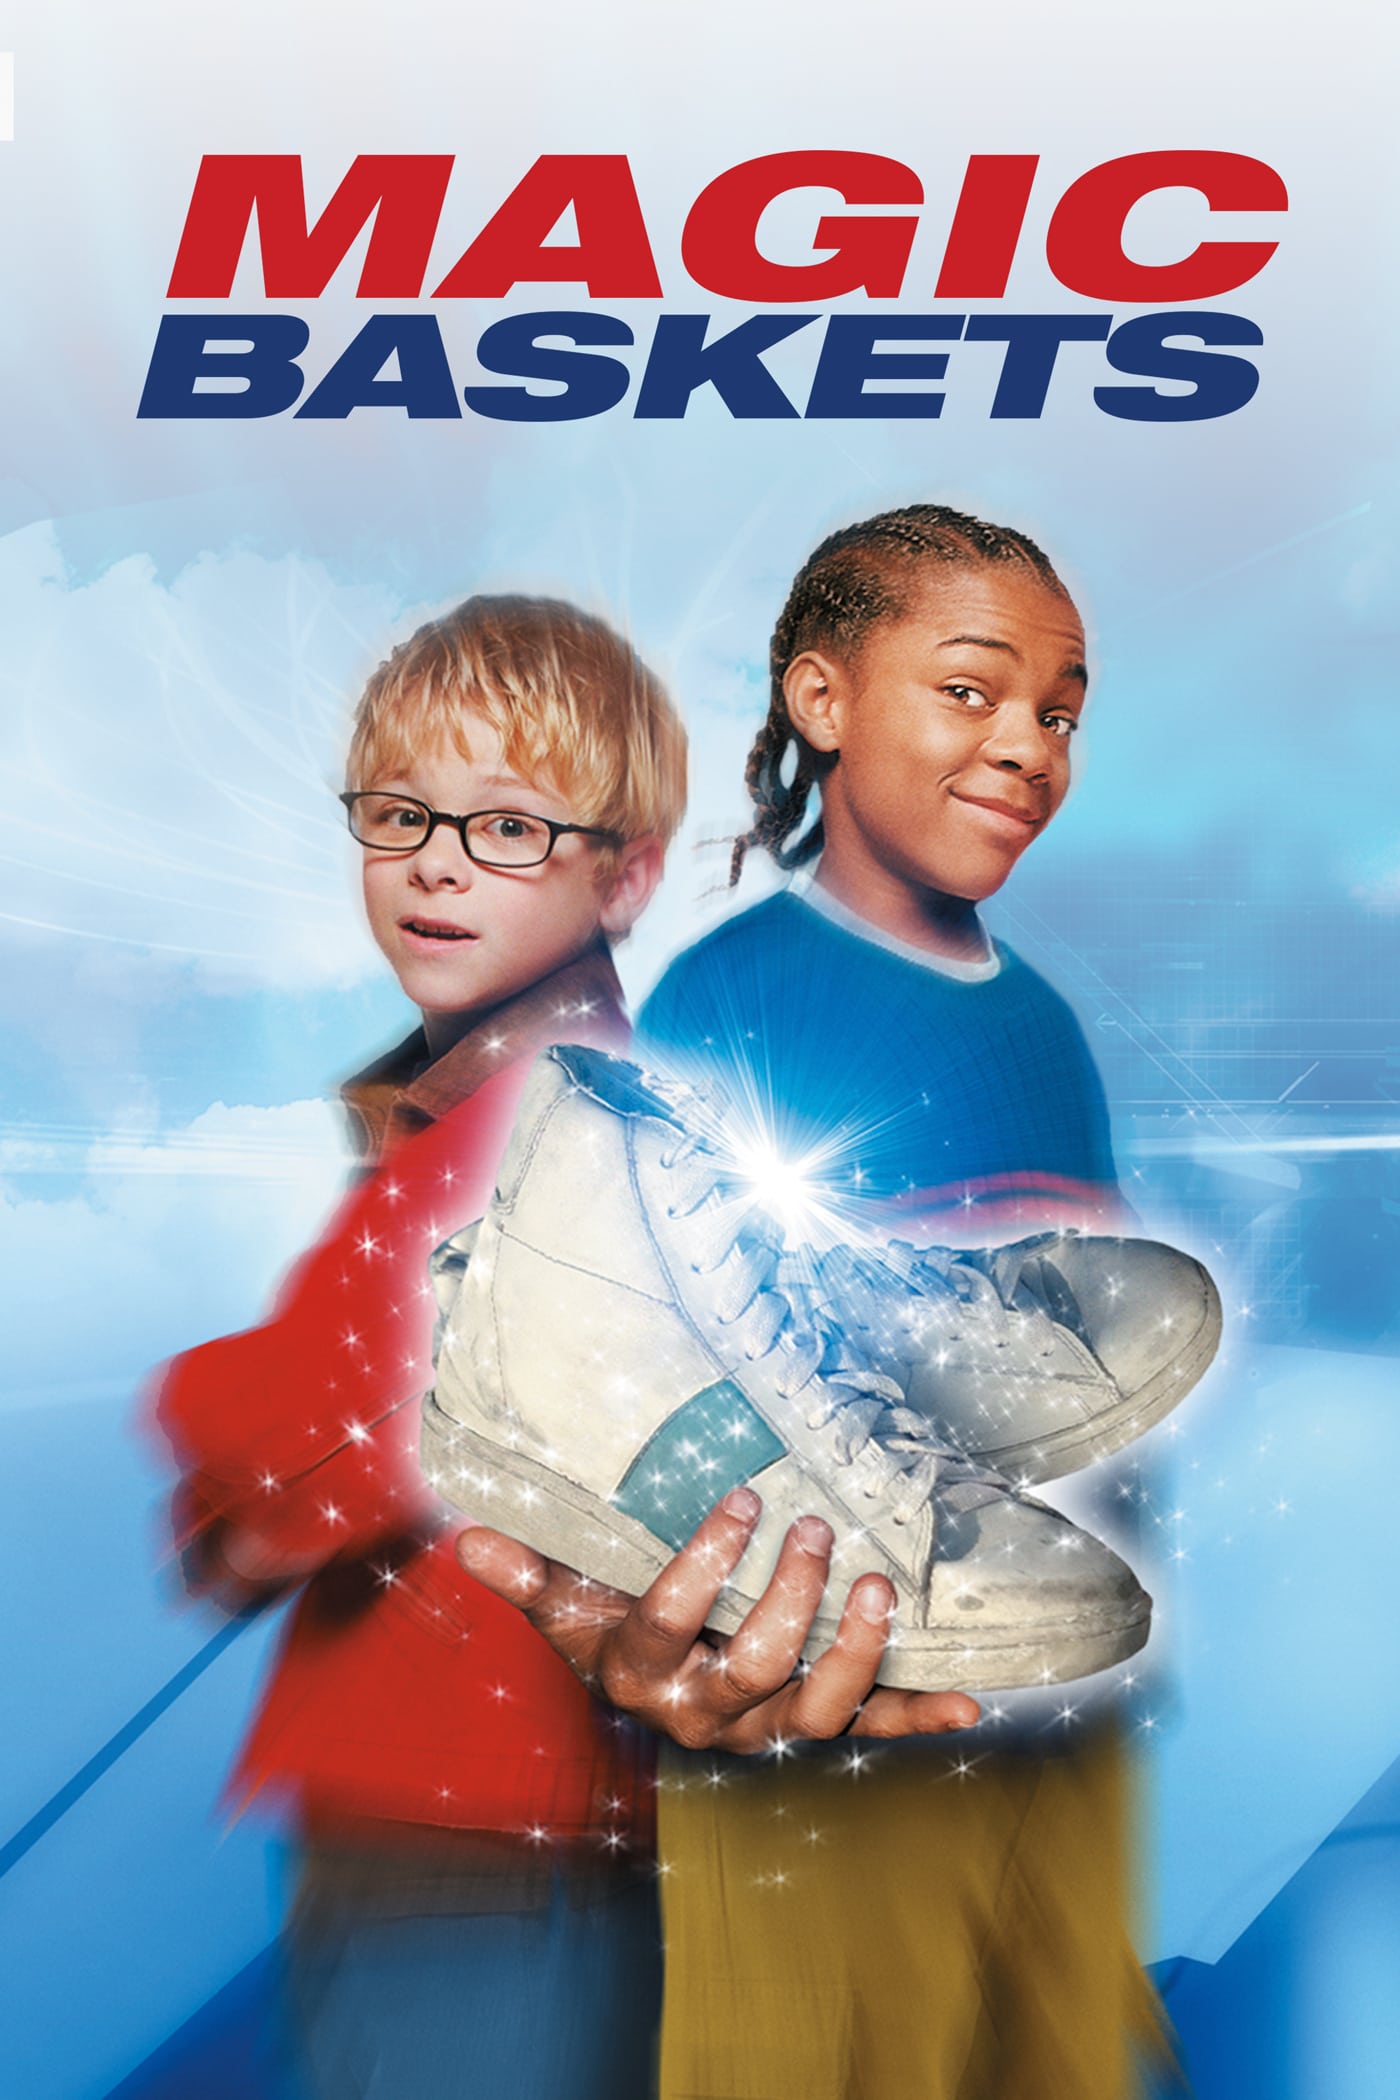 Magic baskets - 2002